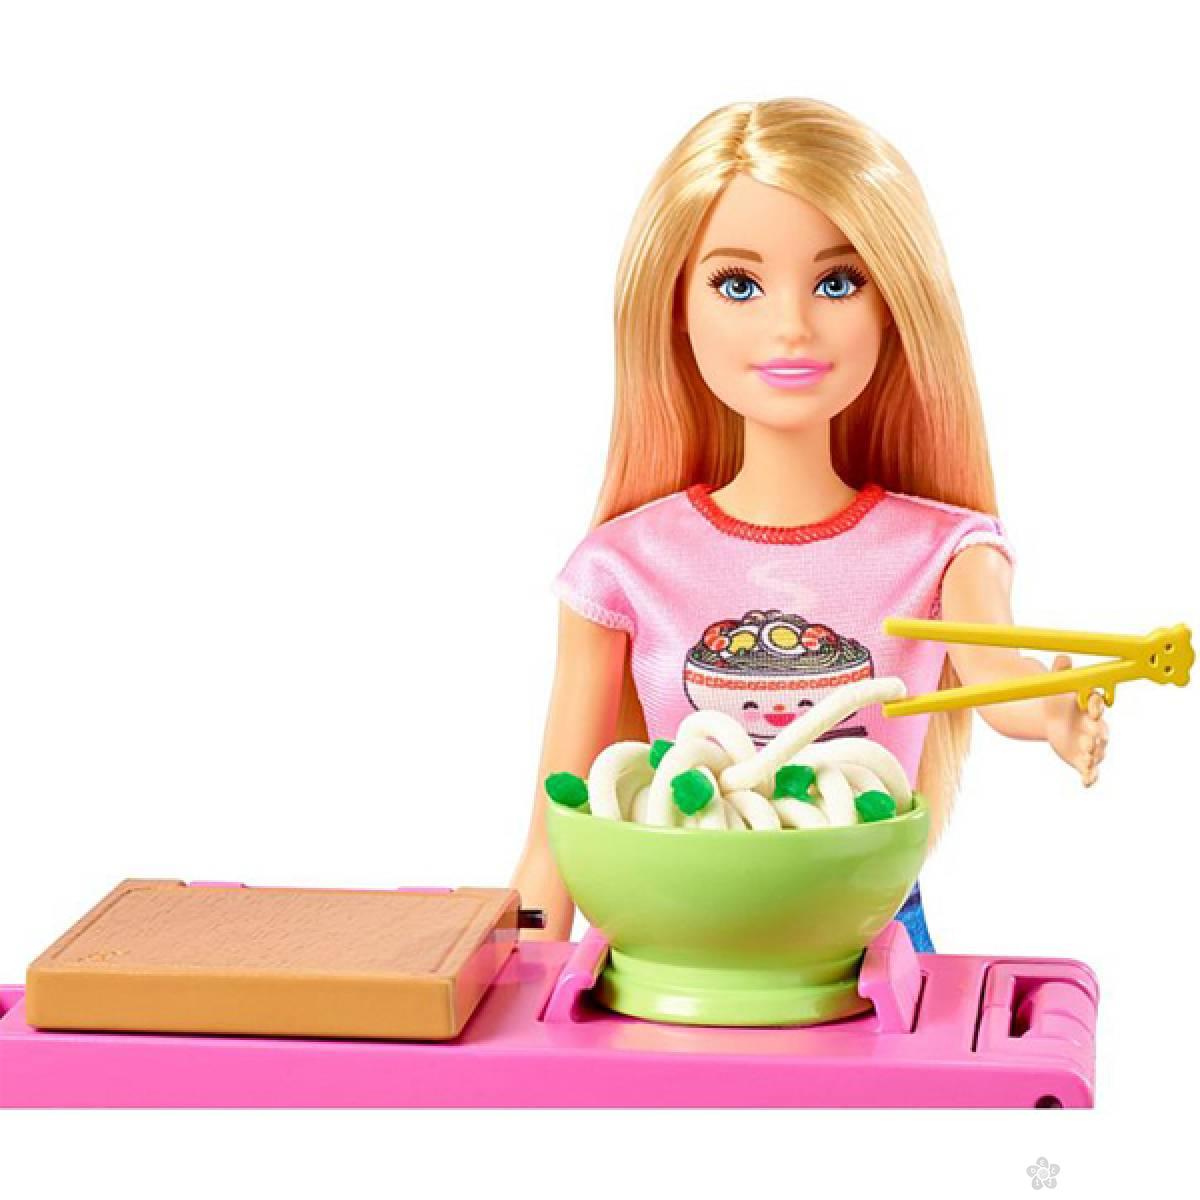 Barbie Lutka Možeš biti bilo šta Noodle Maker GHK43 